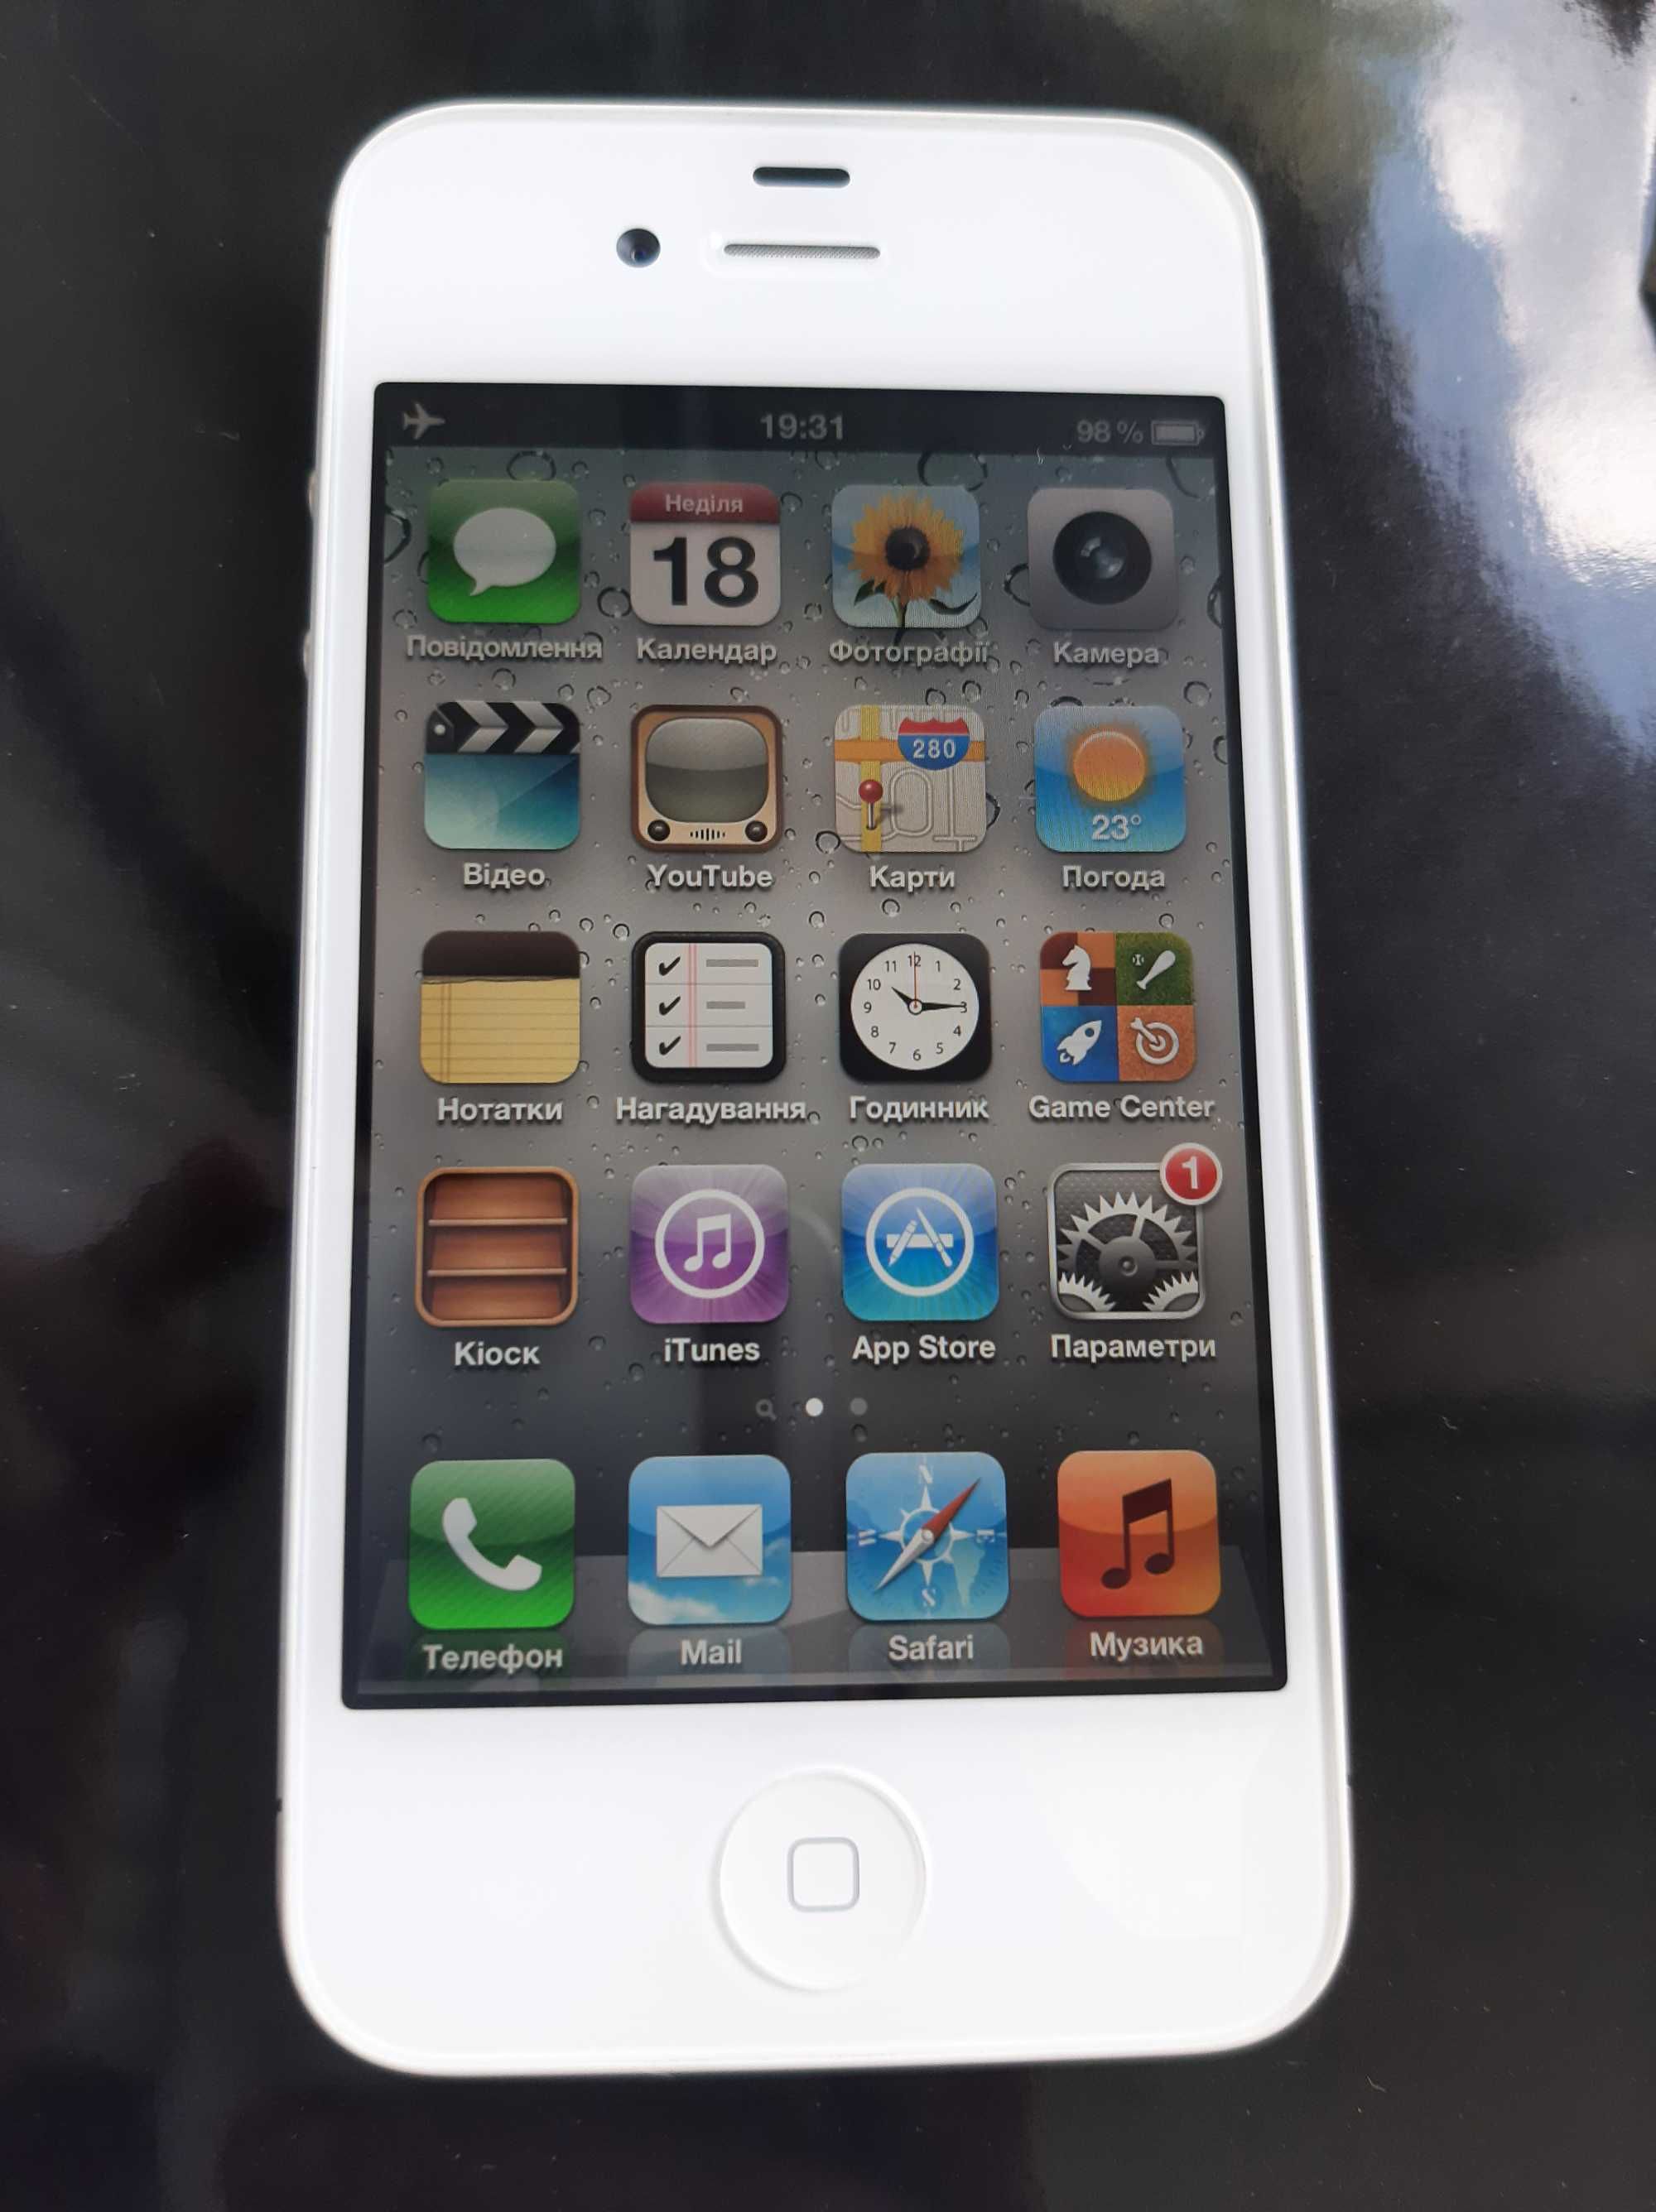 iPhone 4s • IOS 5.1.1 • Операційна система Травень 7,2012 року • НОВИЙ